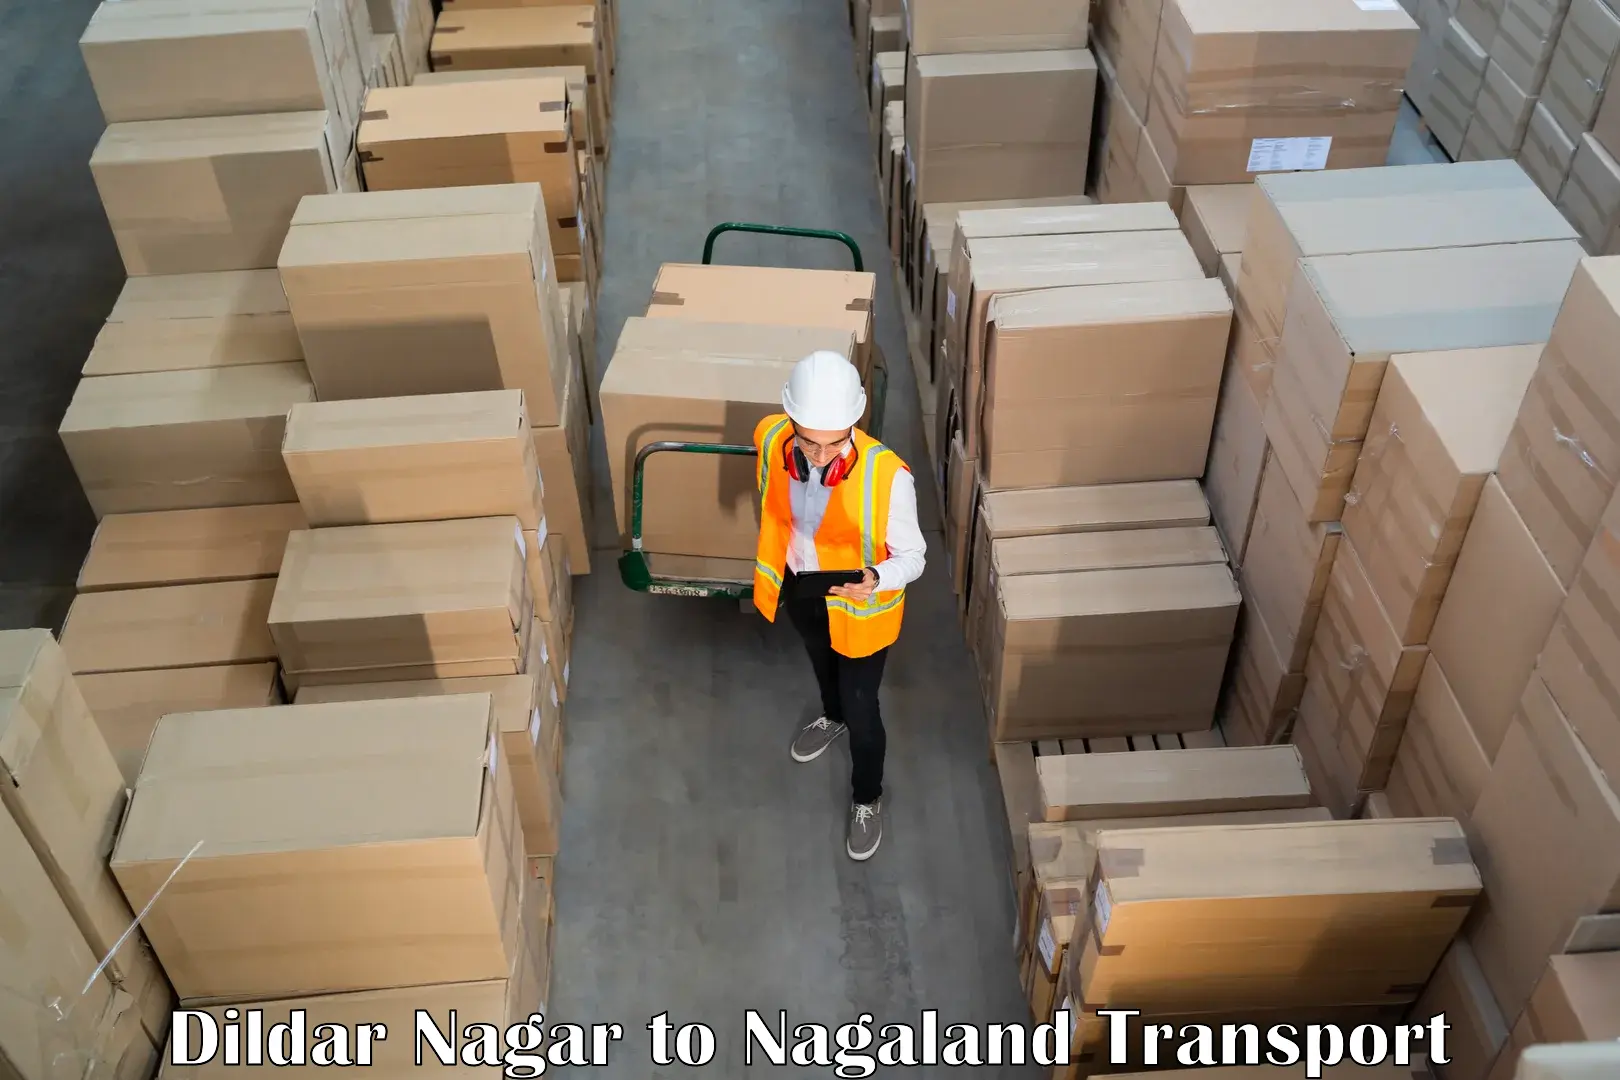 Cargo transportation services Dildar Nagar to Mon